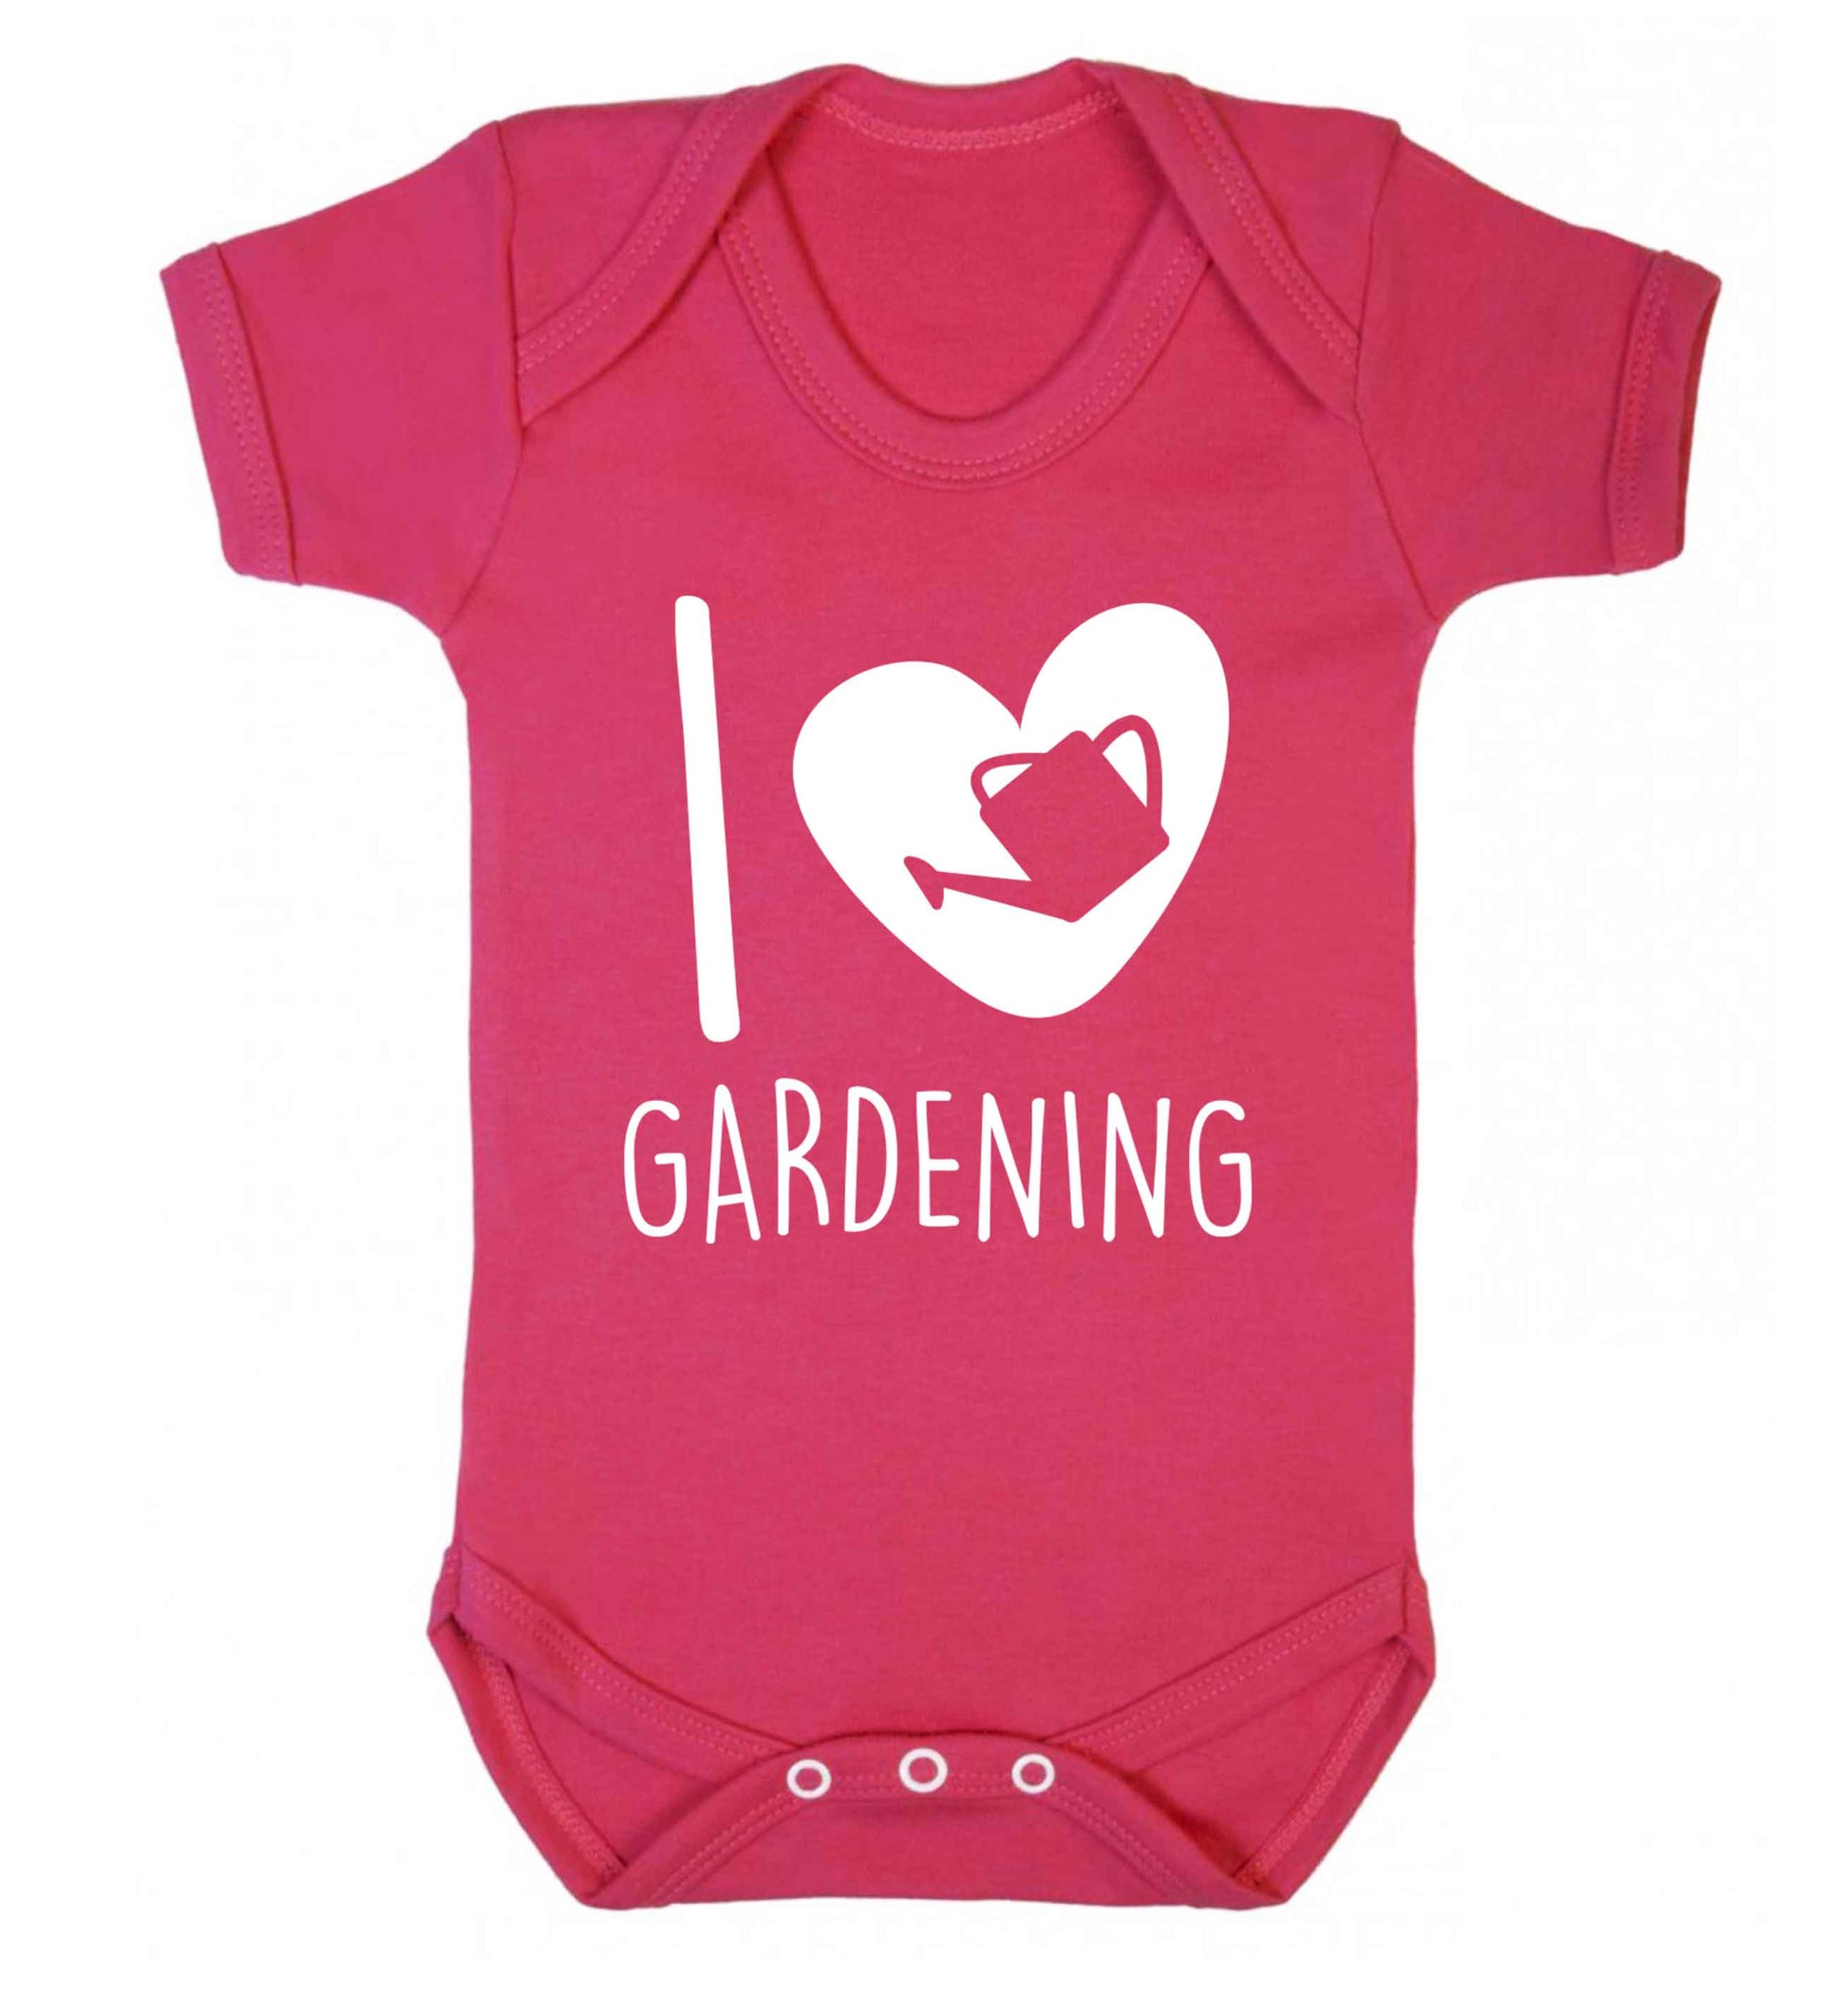 I love gardening Baby Vest dark pink 18-24 months